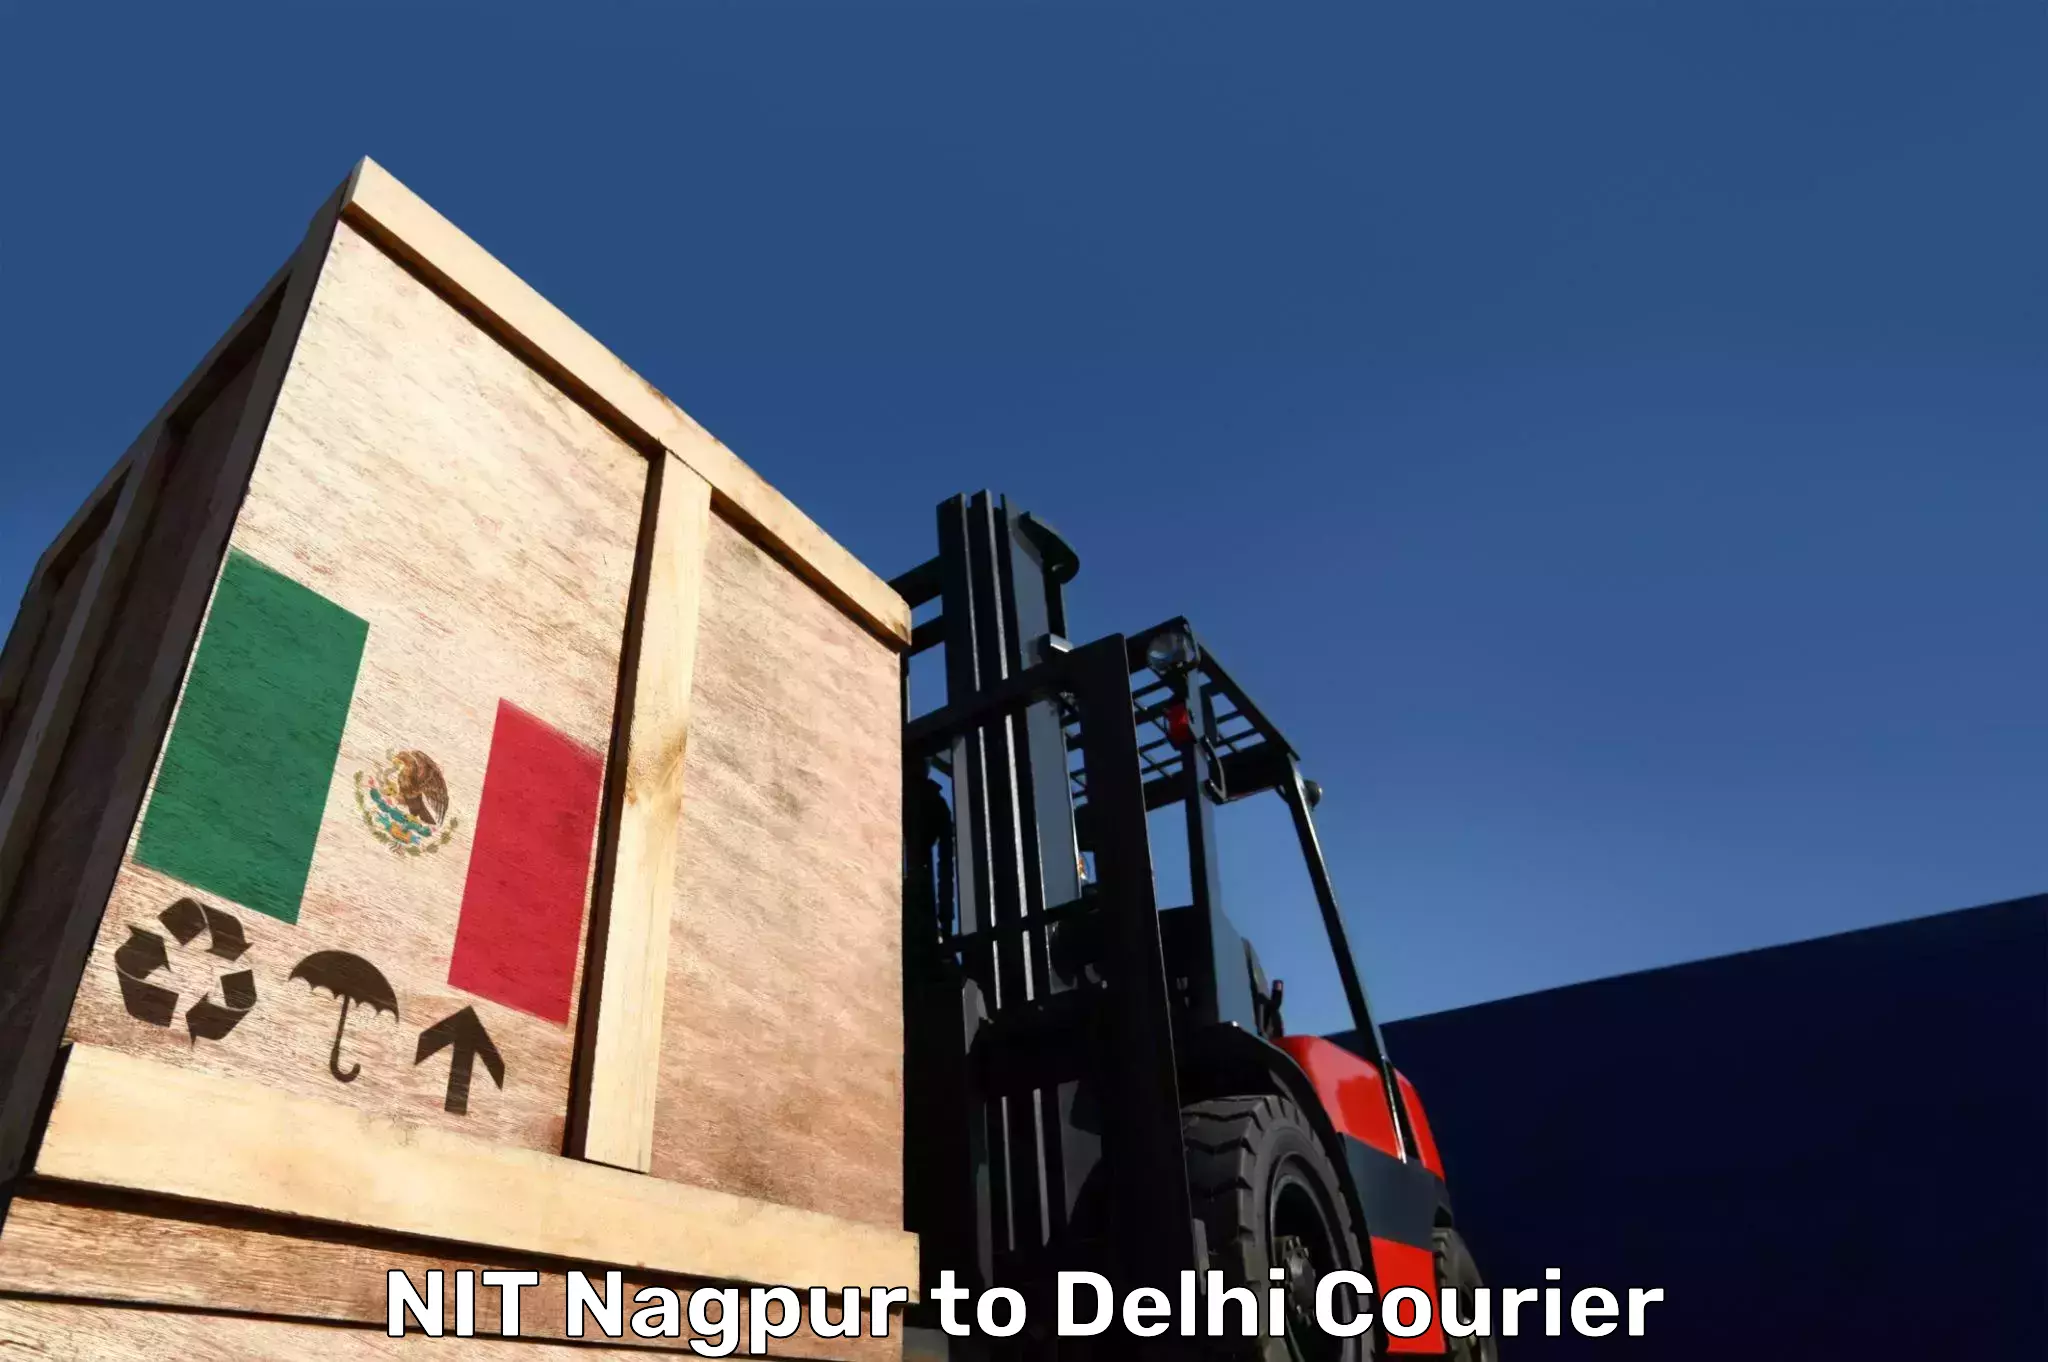 Baggage transport scheduler NIT Nagpur to NCR